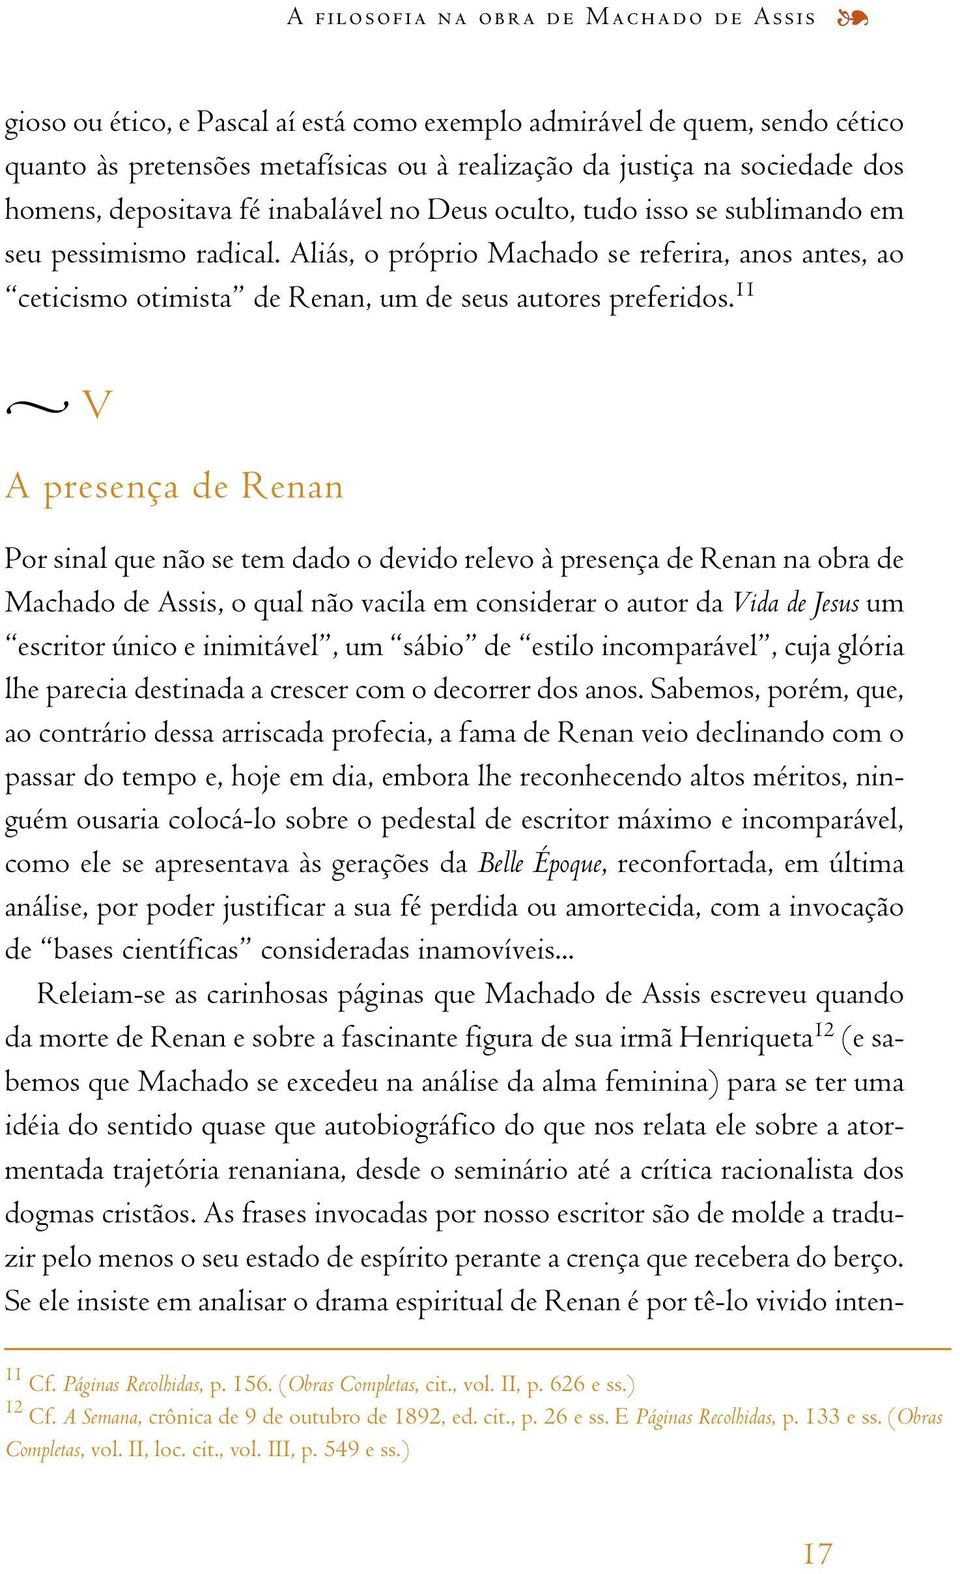 Aliás,o próprio Machado se referira,anos antes,ao ceticismo otimista de Renan, um de seus autores preferidos.